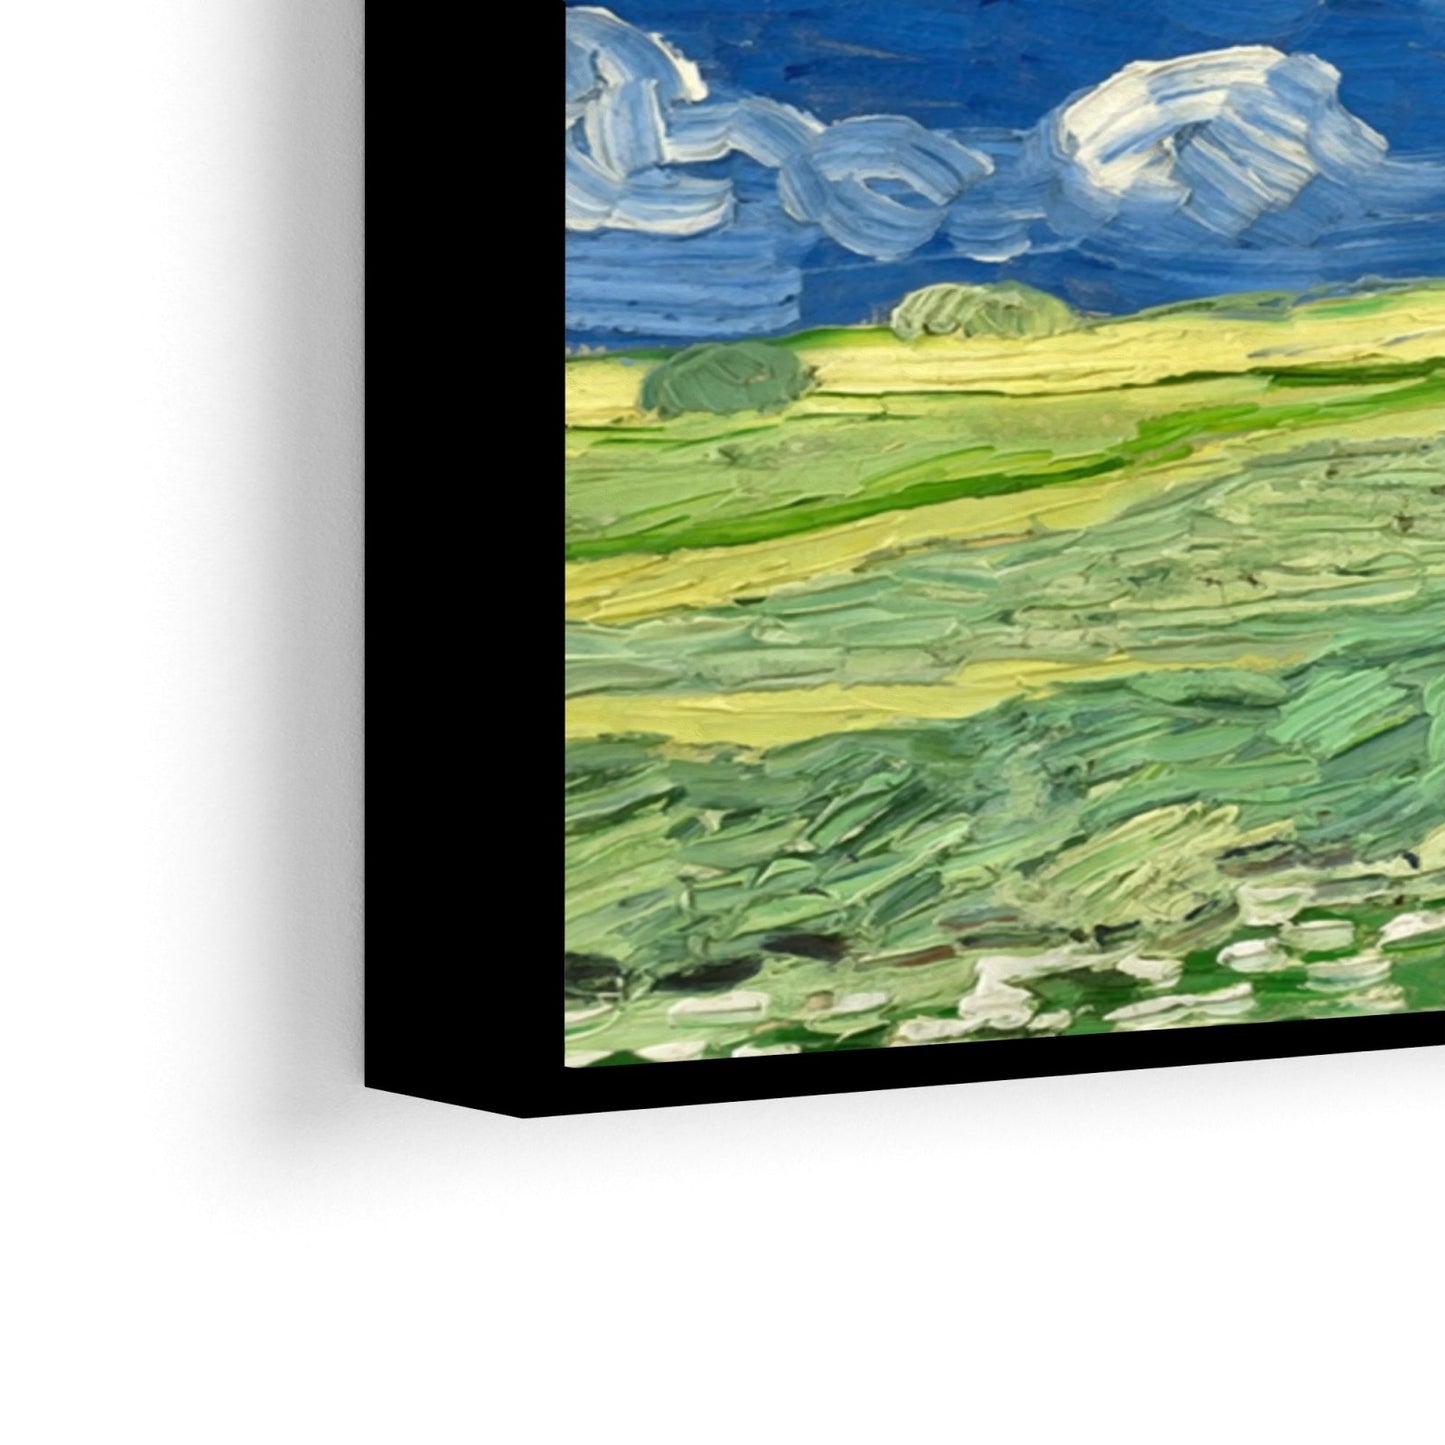 Wheatfields Under Thunderclouds, Vincent Van Gogh